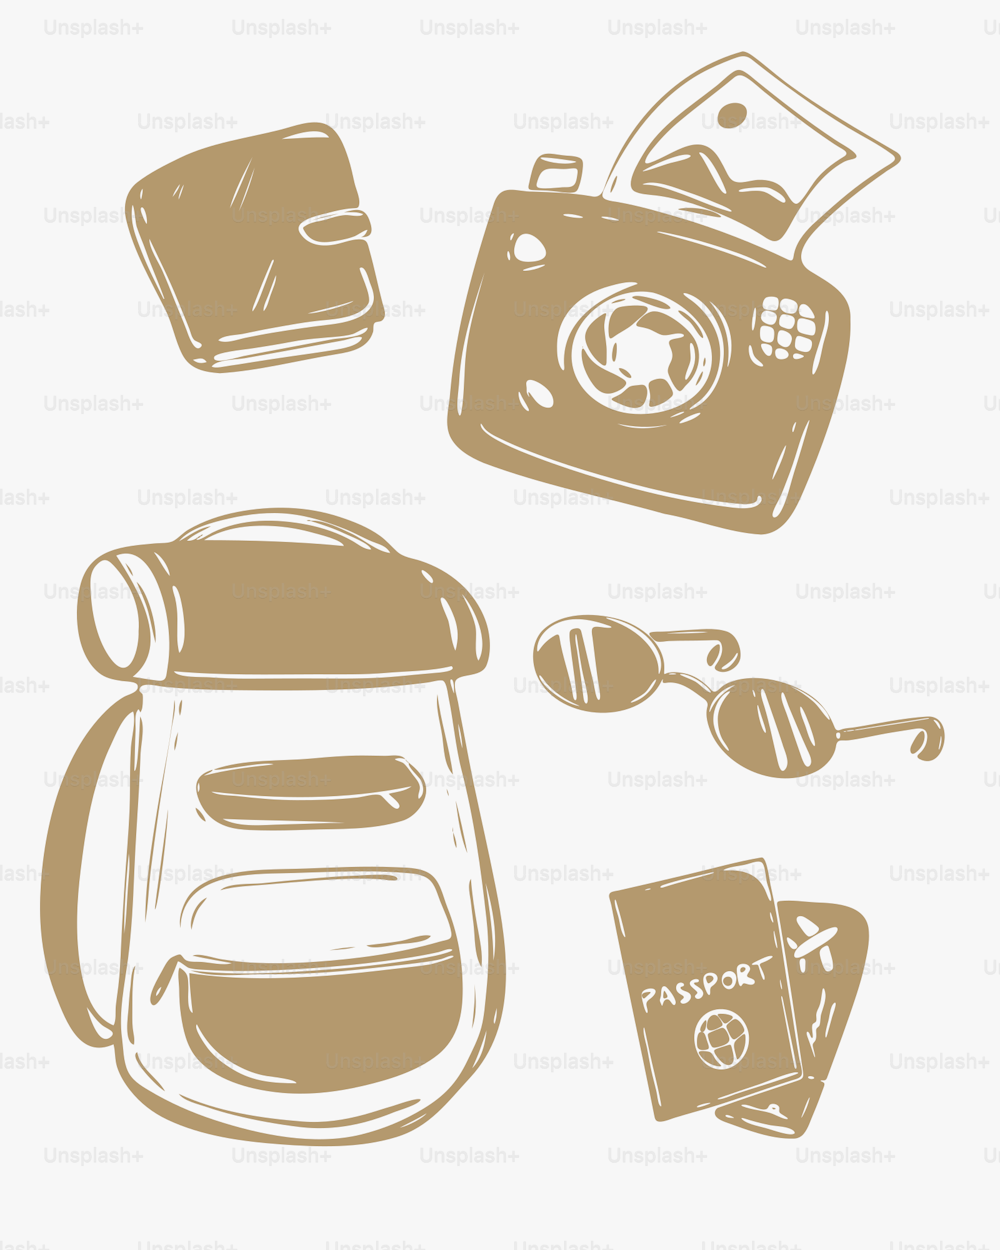 un disegno marrone e bianco di una macchina fotografica, un passaporto e uno zaino